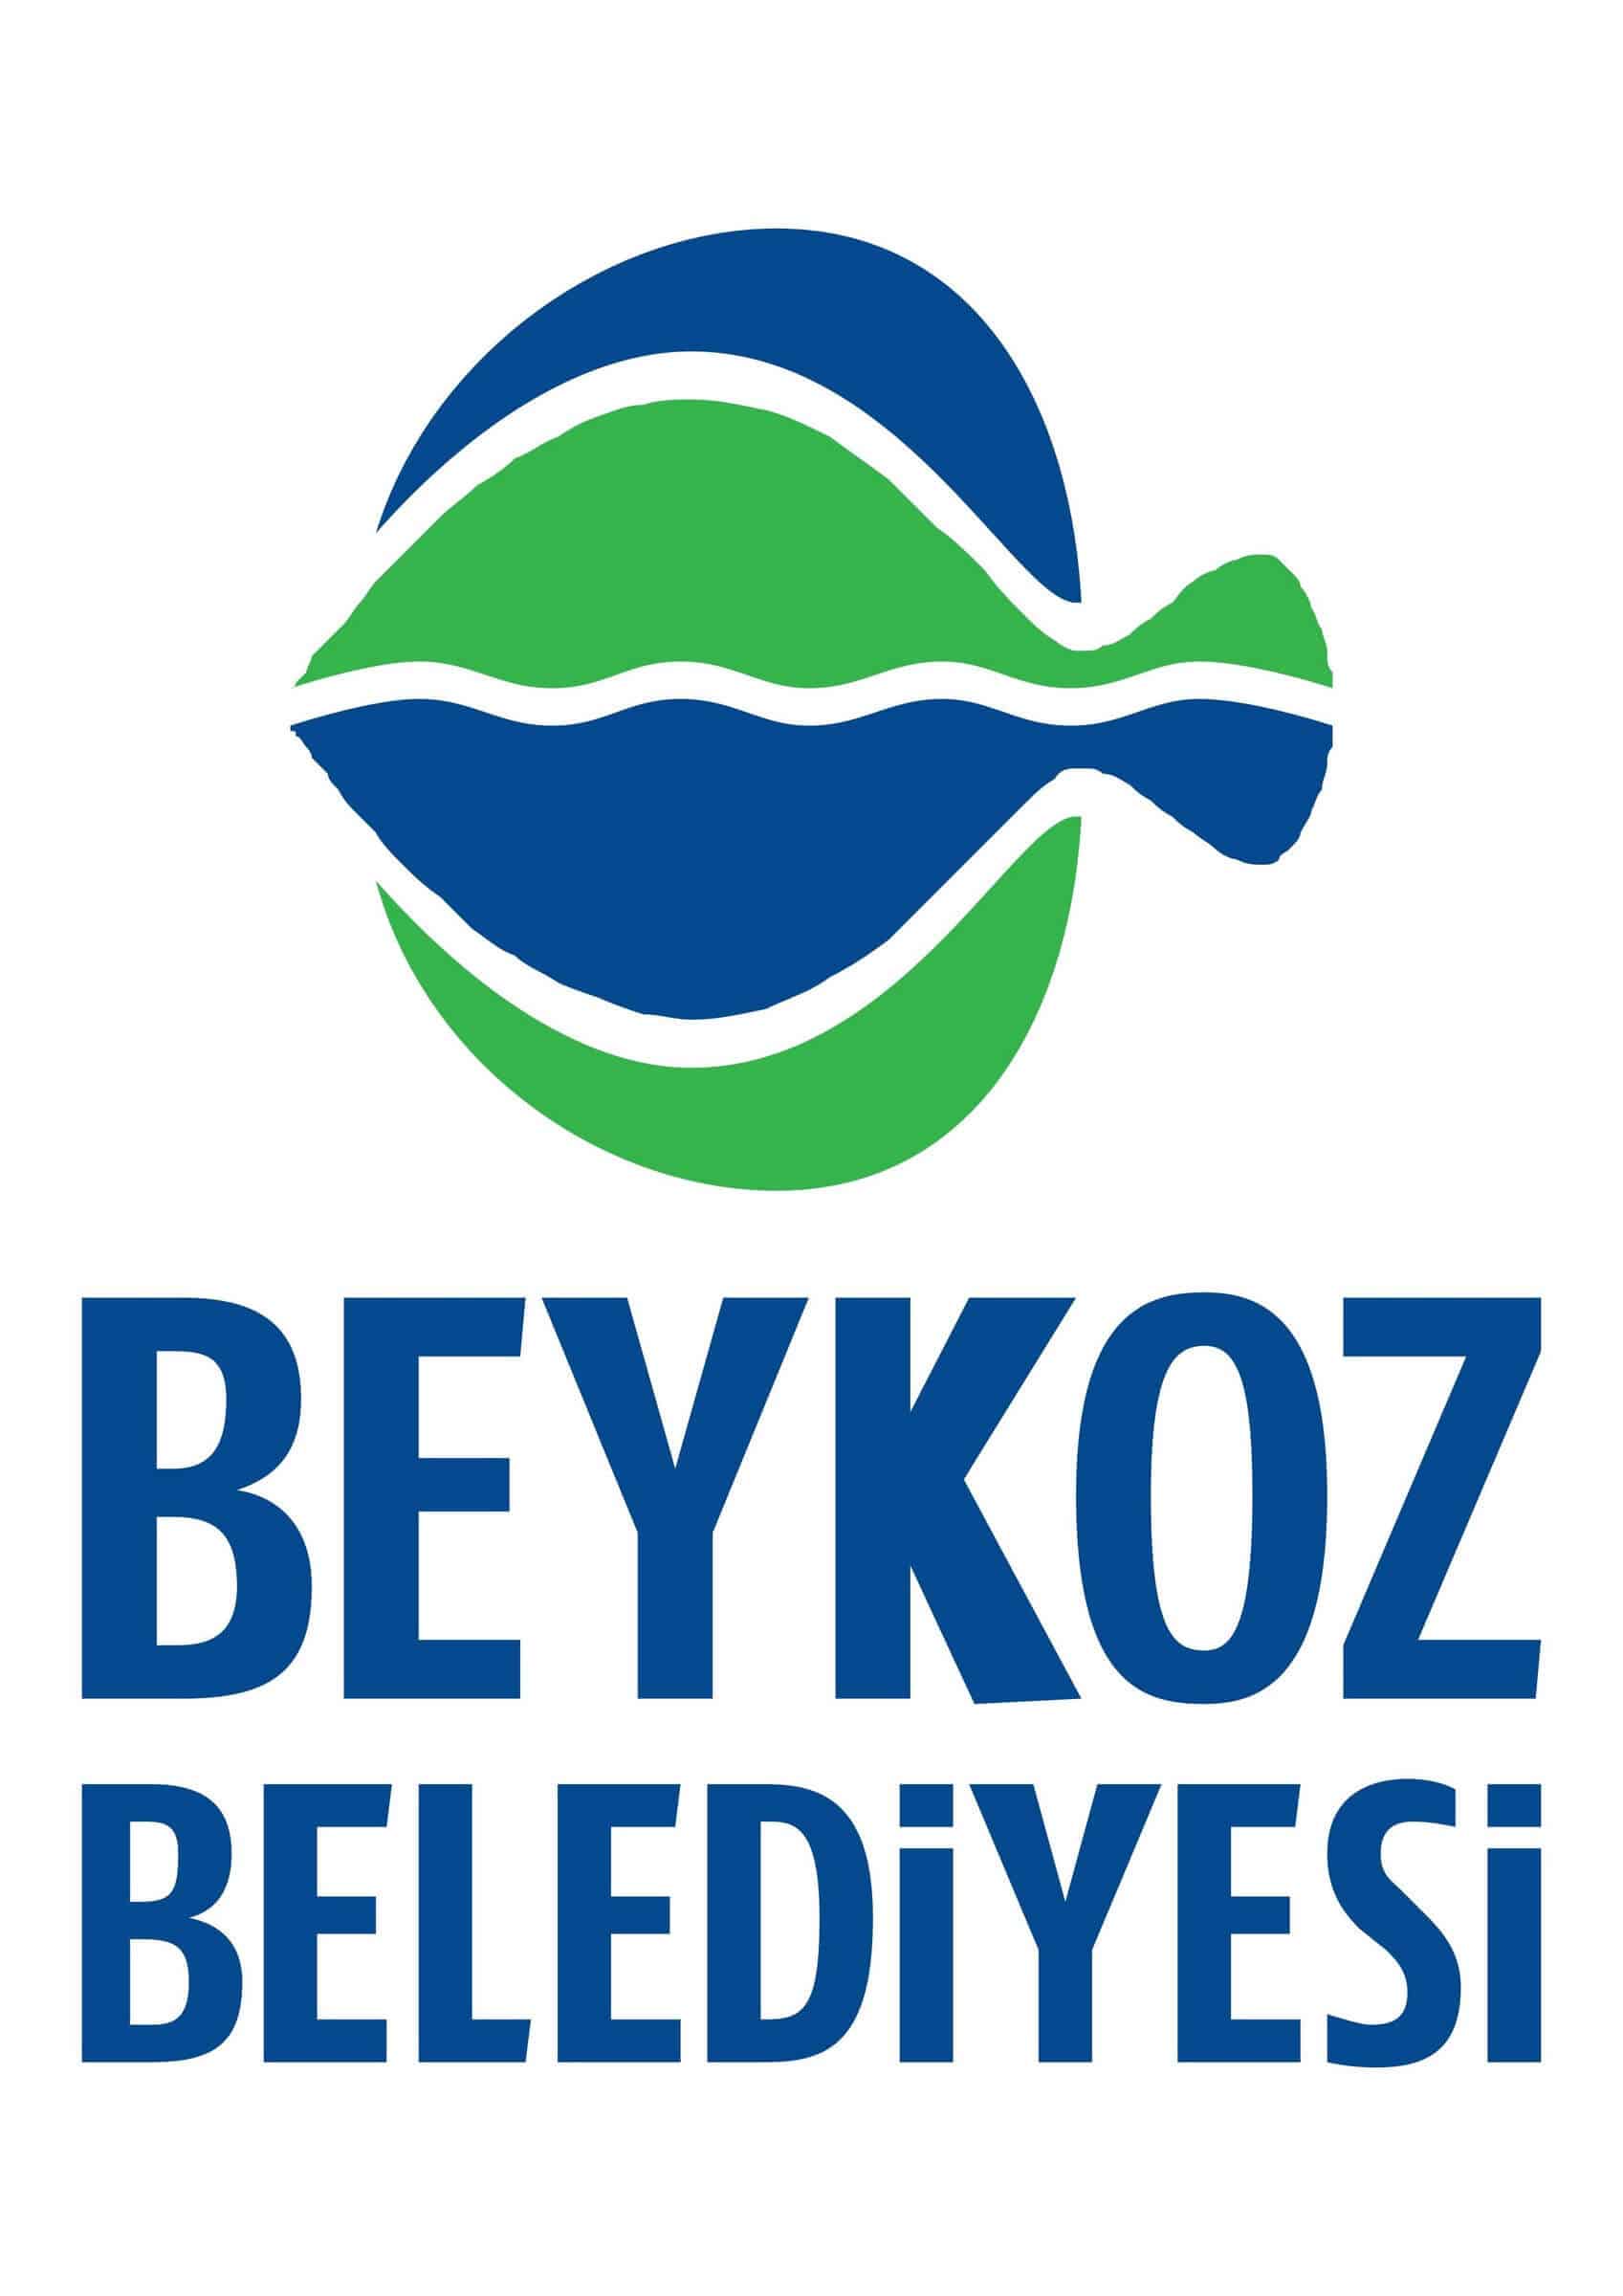 beykoz belediyesi logo